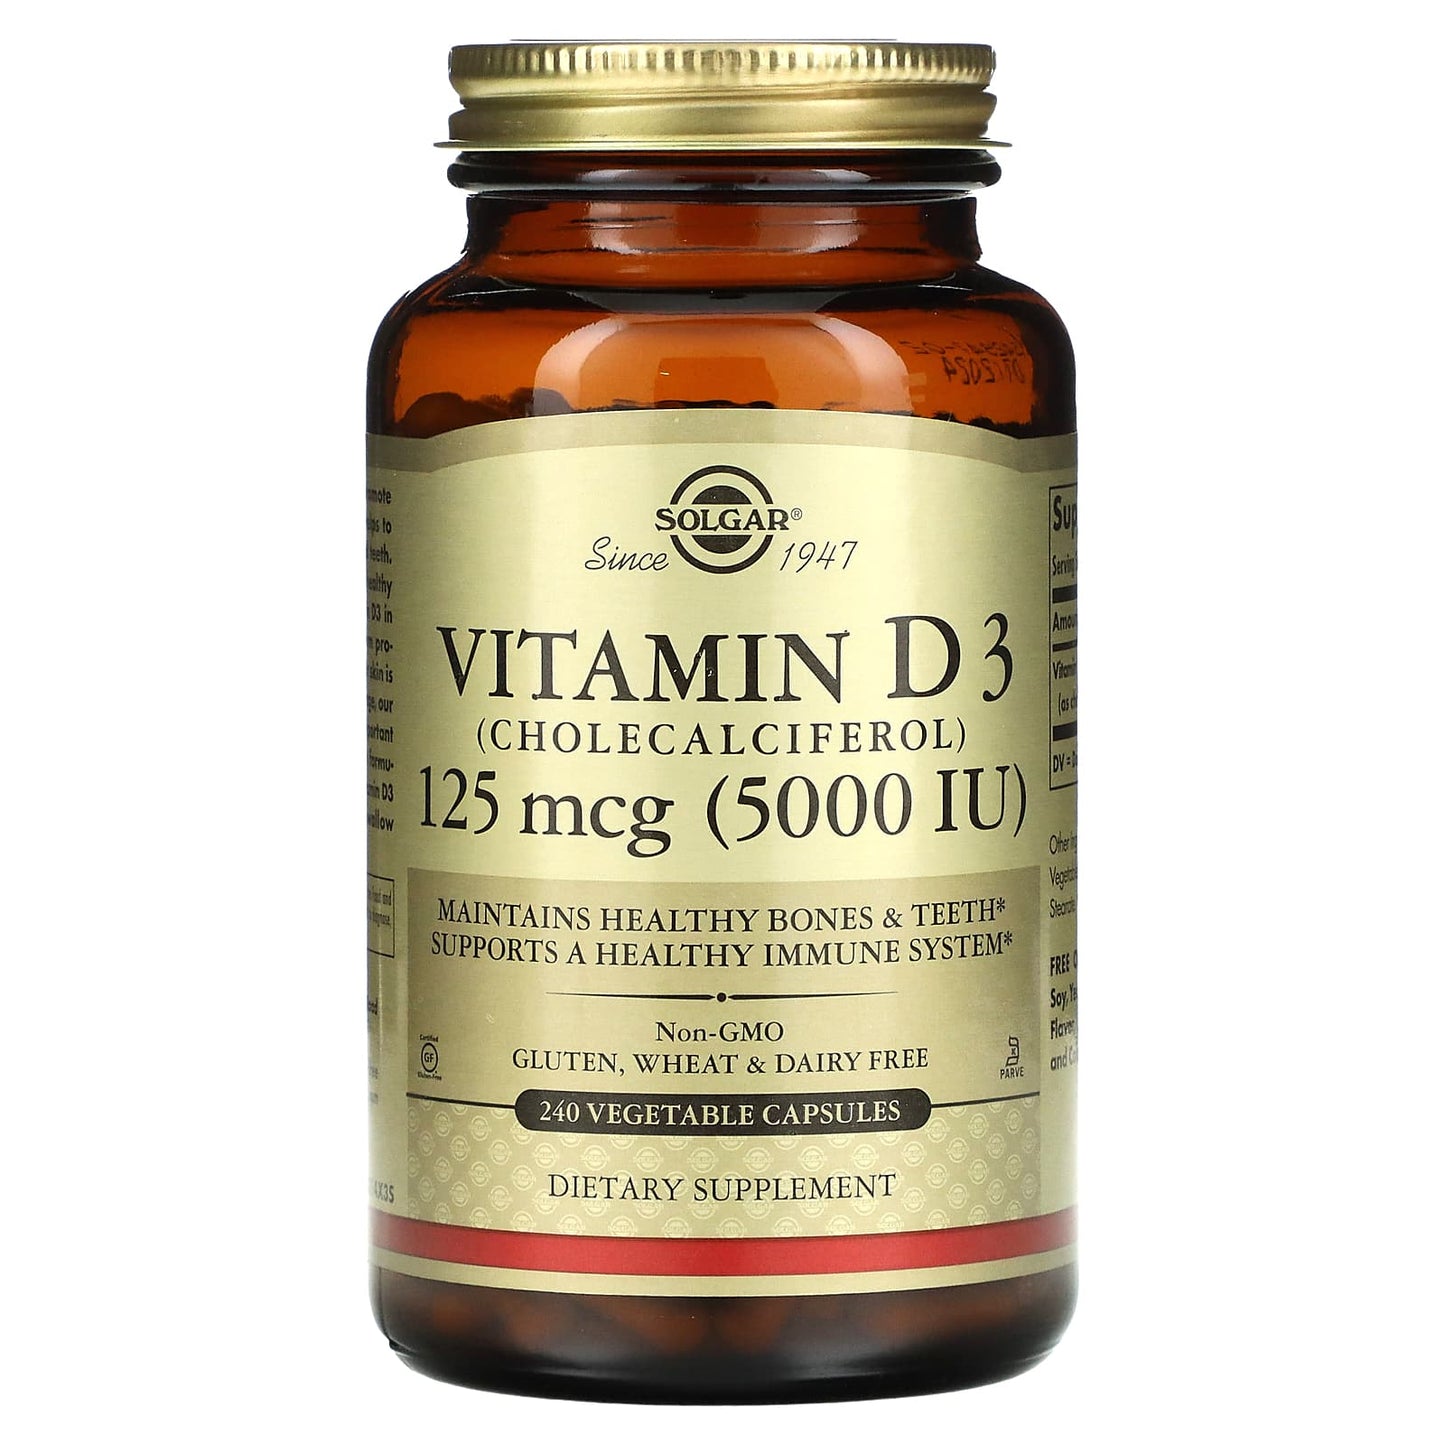 Solgar-Vitamin D3 (Cholecalciferol)-125 mcg (5,000 IU)-240 Vegetable Capsules